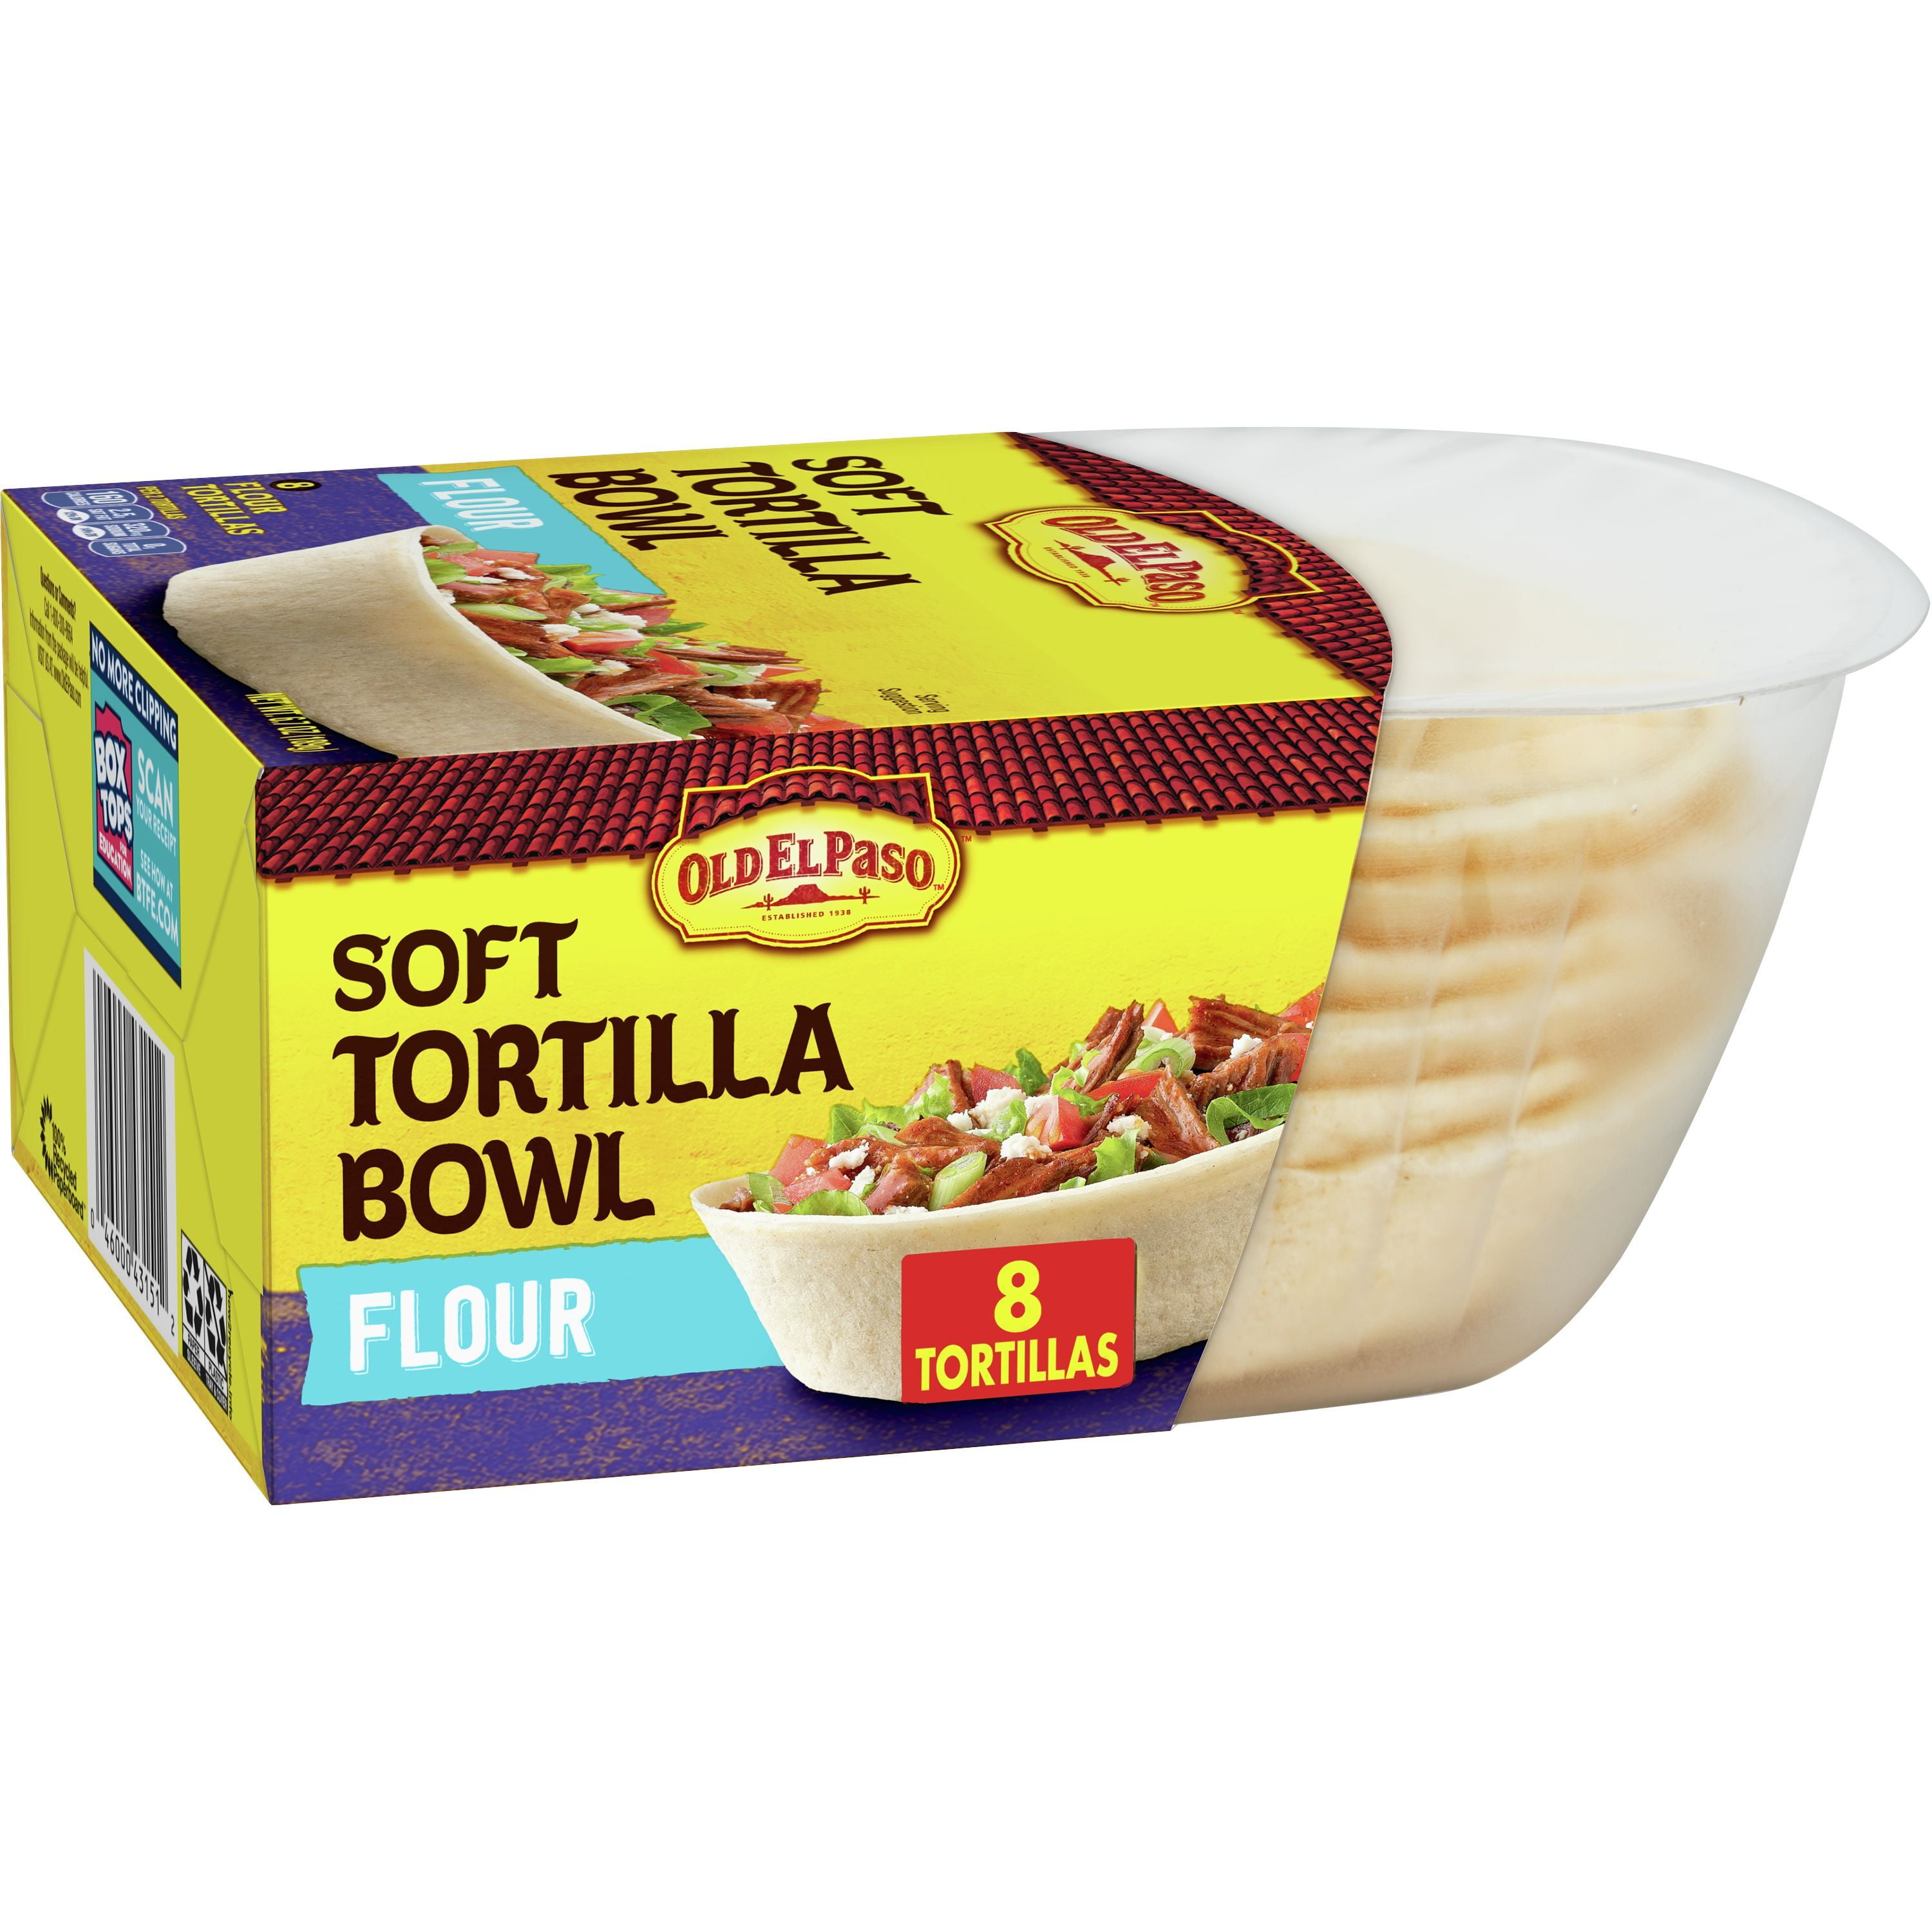 Old El Paso Soft Tortilla Bowls, Flour, 8 ct., 6.7 oz.